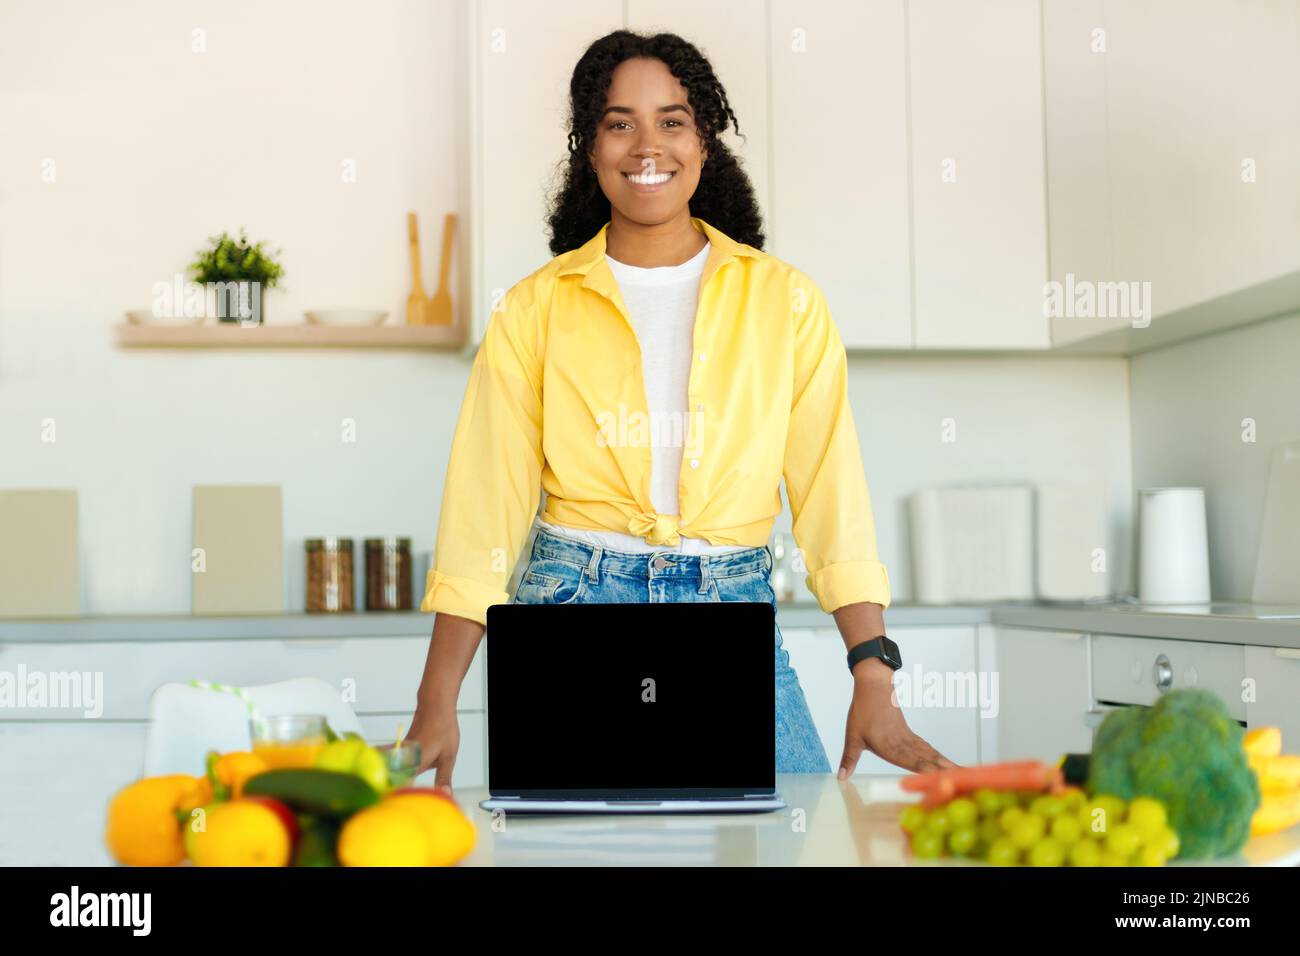 Recetas de cocina en línea. Feliz dama negra mostrando el ordenador portátil con pantalla en blanco en la cocina moderna, maqueta, espacio de copia Foto de stock